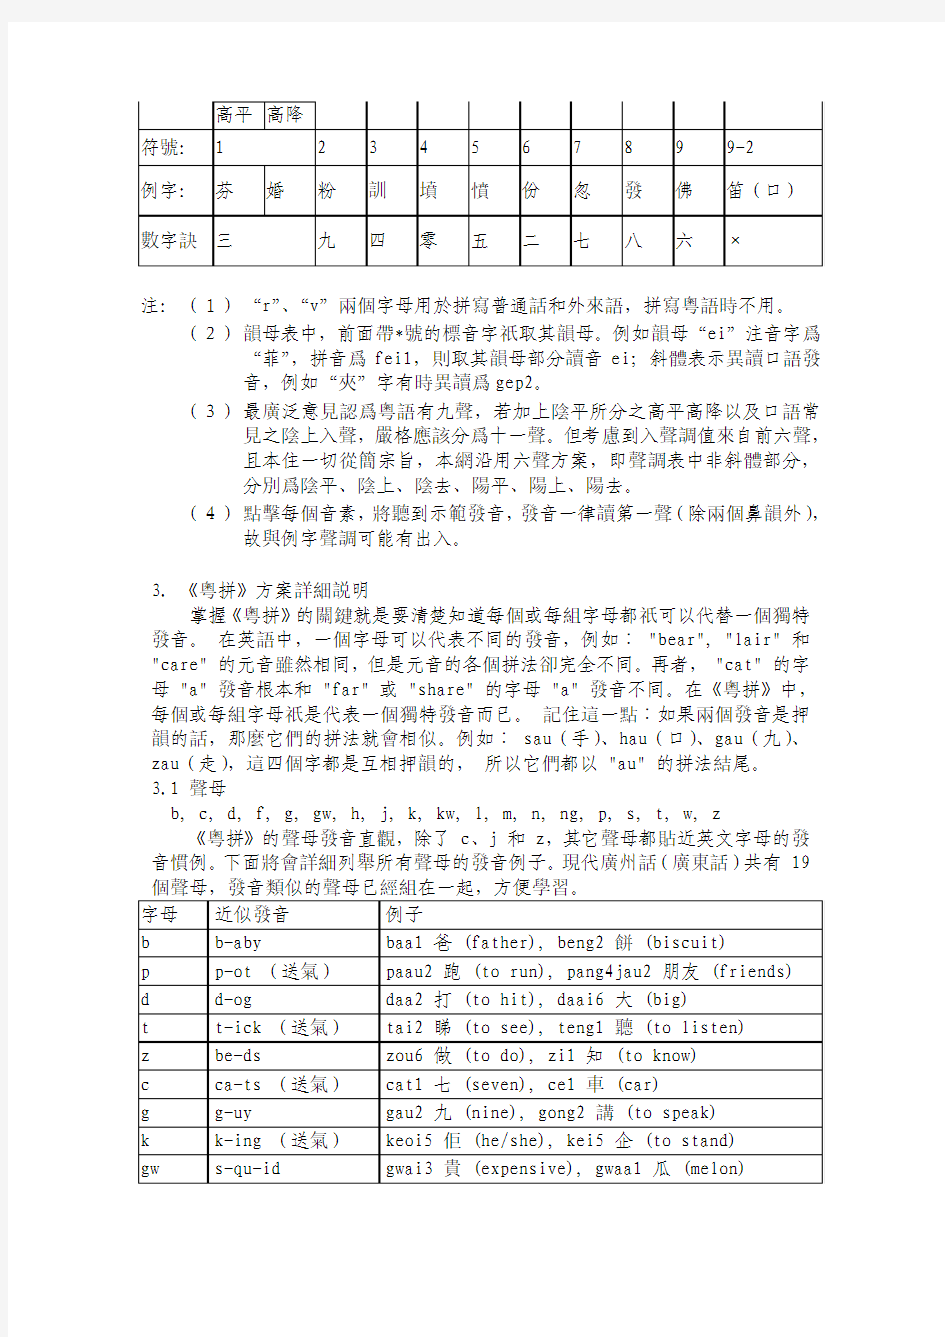 香港语言学会粤语拼音方案(修订版)